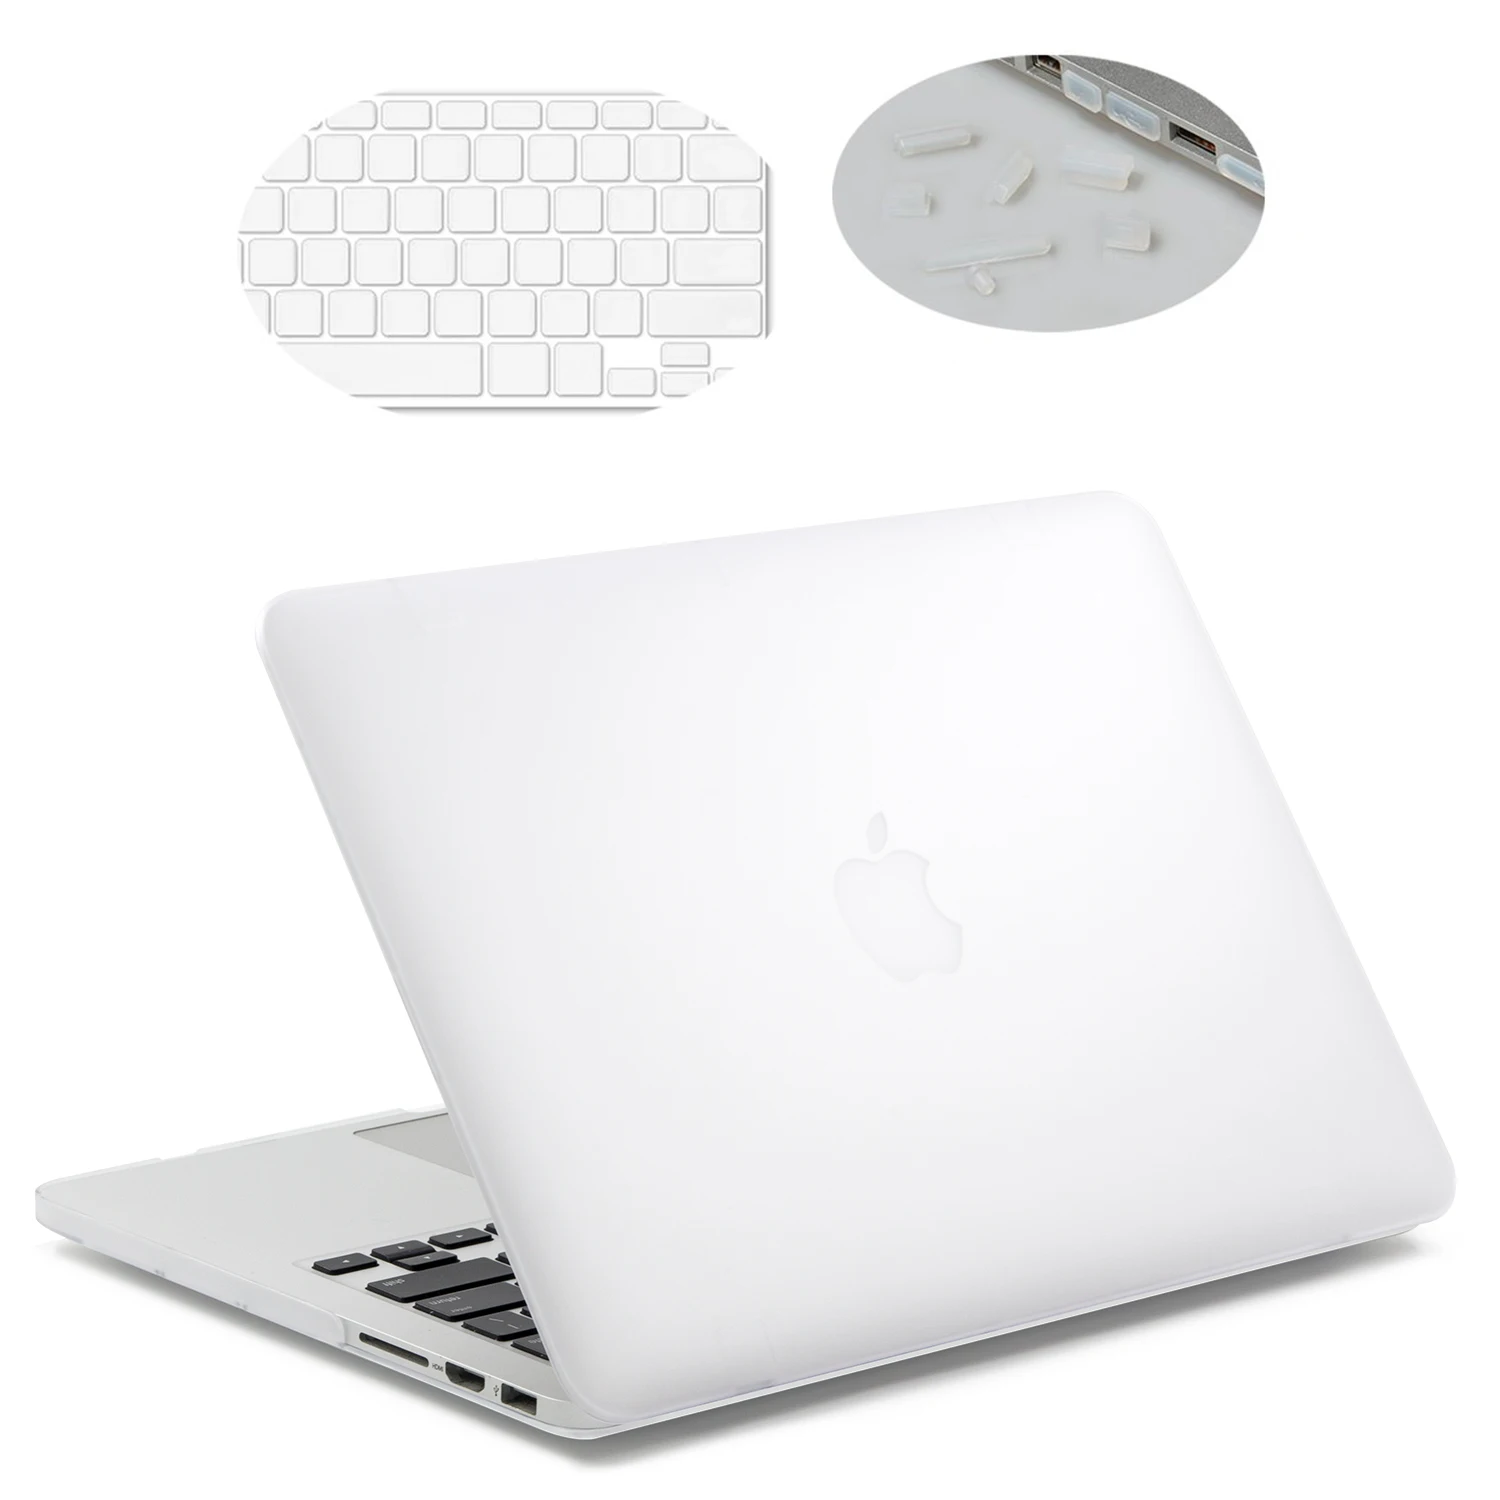 Чехол для ноутбука Lention для MacBook Air 13 дюймов, модель A1369 и A1466(предыдущее поколение), с крышкой клавиатуры и разъемами - Цвет: white